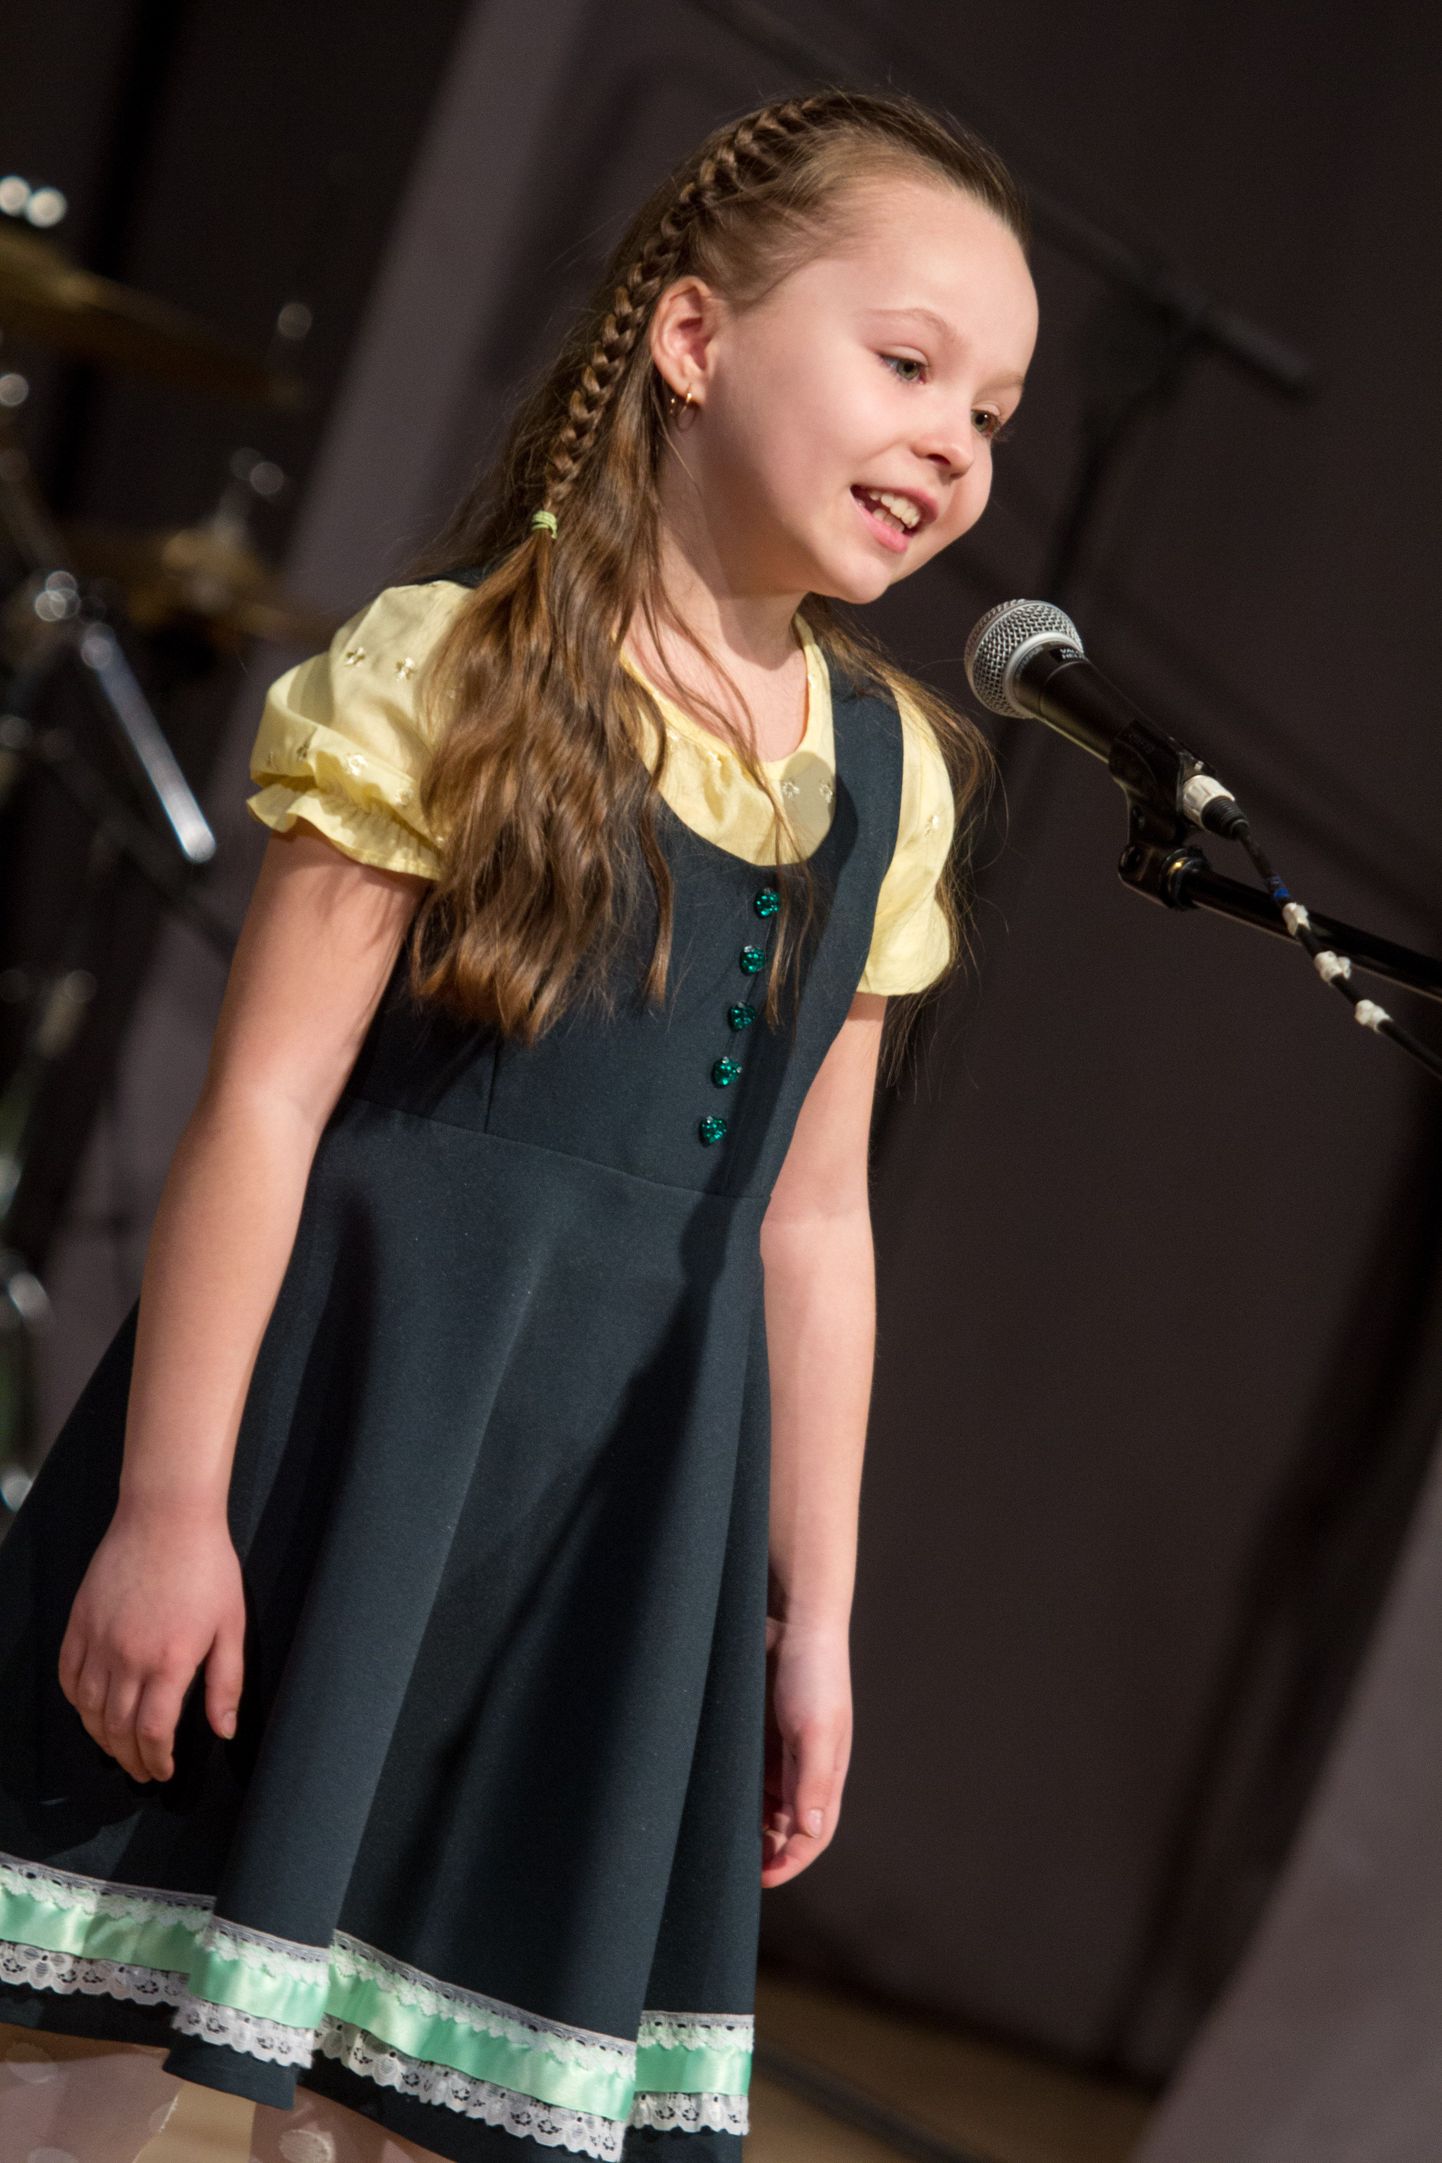 Eelmisel aastal võitis maakondlikul laste lauluvõistlusel 5-7aastaste vanuserühmas Grete Laine.